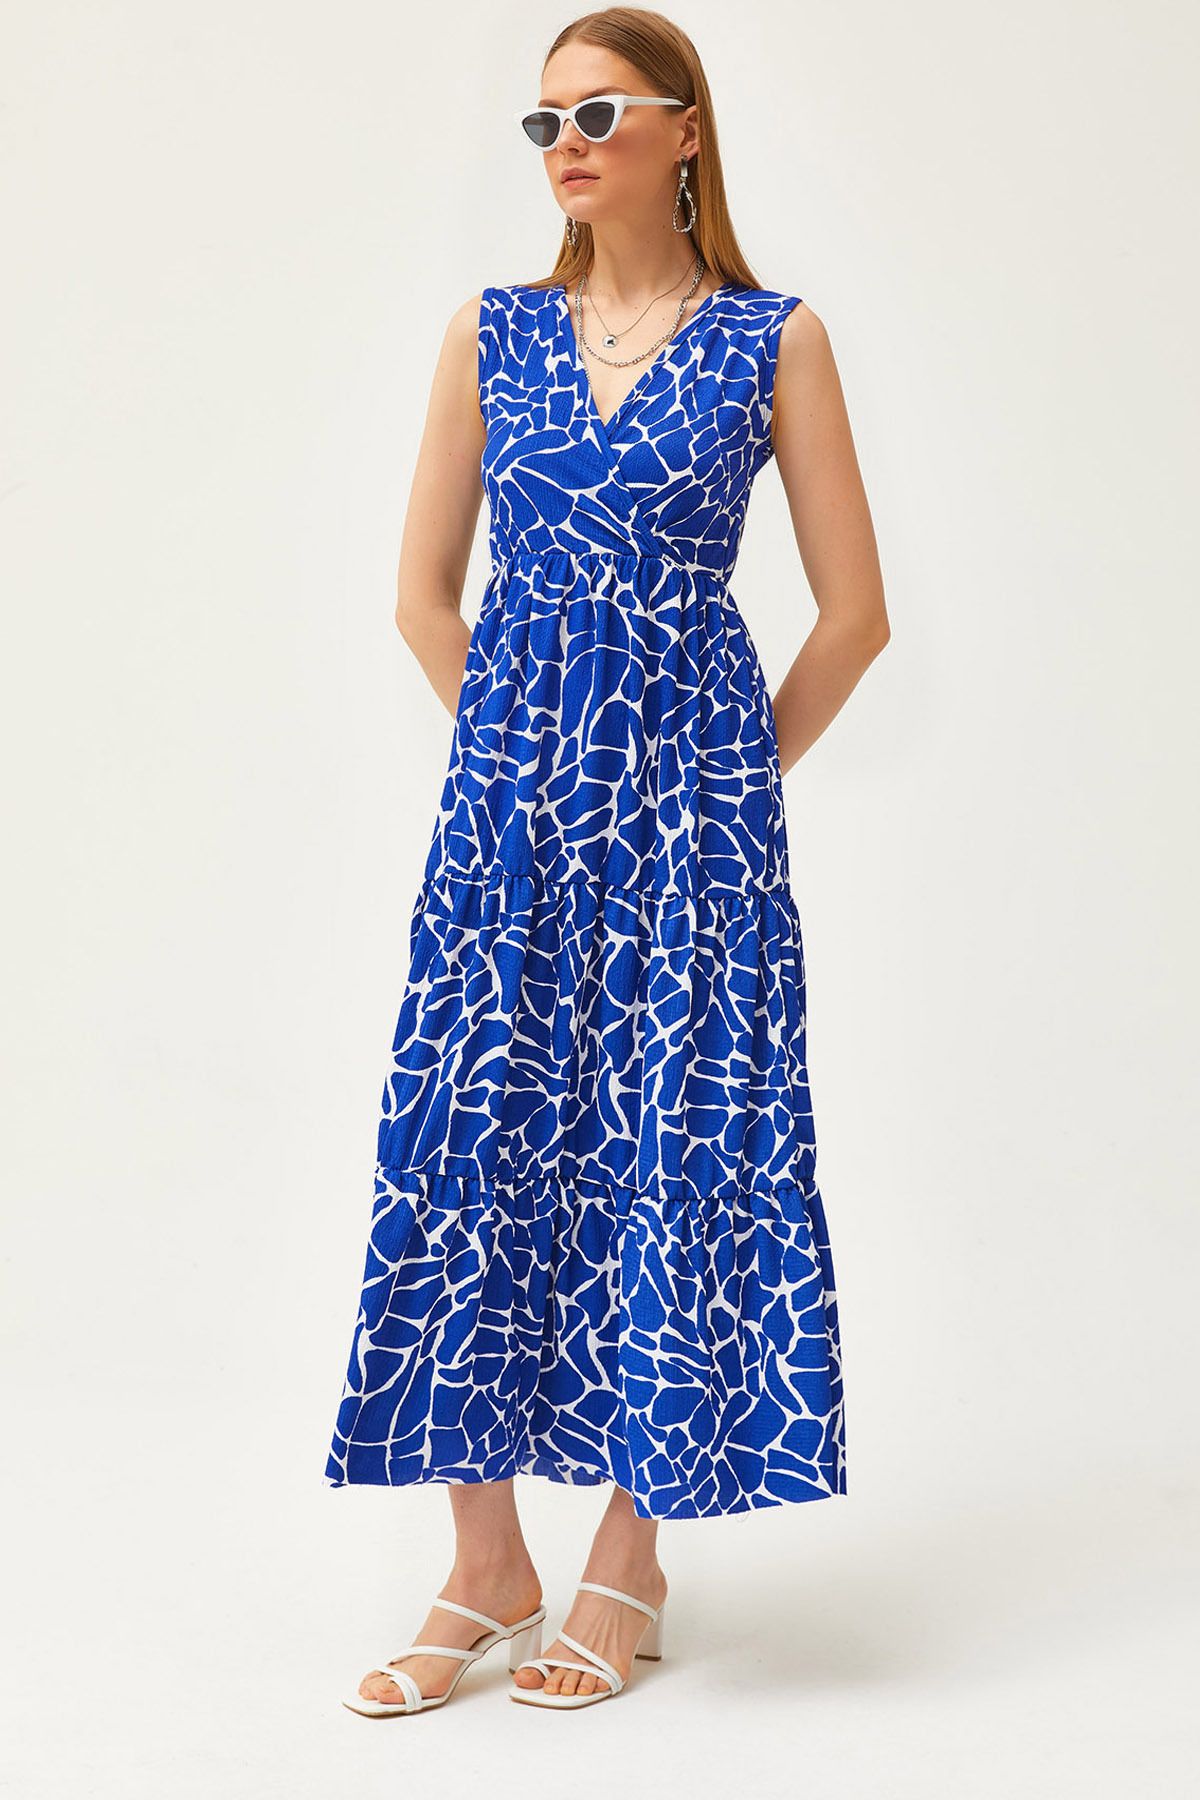 Olalook Kadın Saks Mavi Kruvaze Yaka Desenli Maxi Örme Elbise ELB-19002125